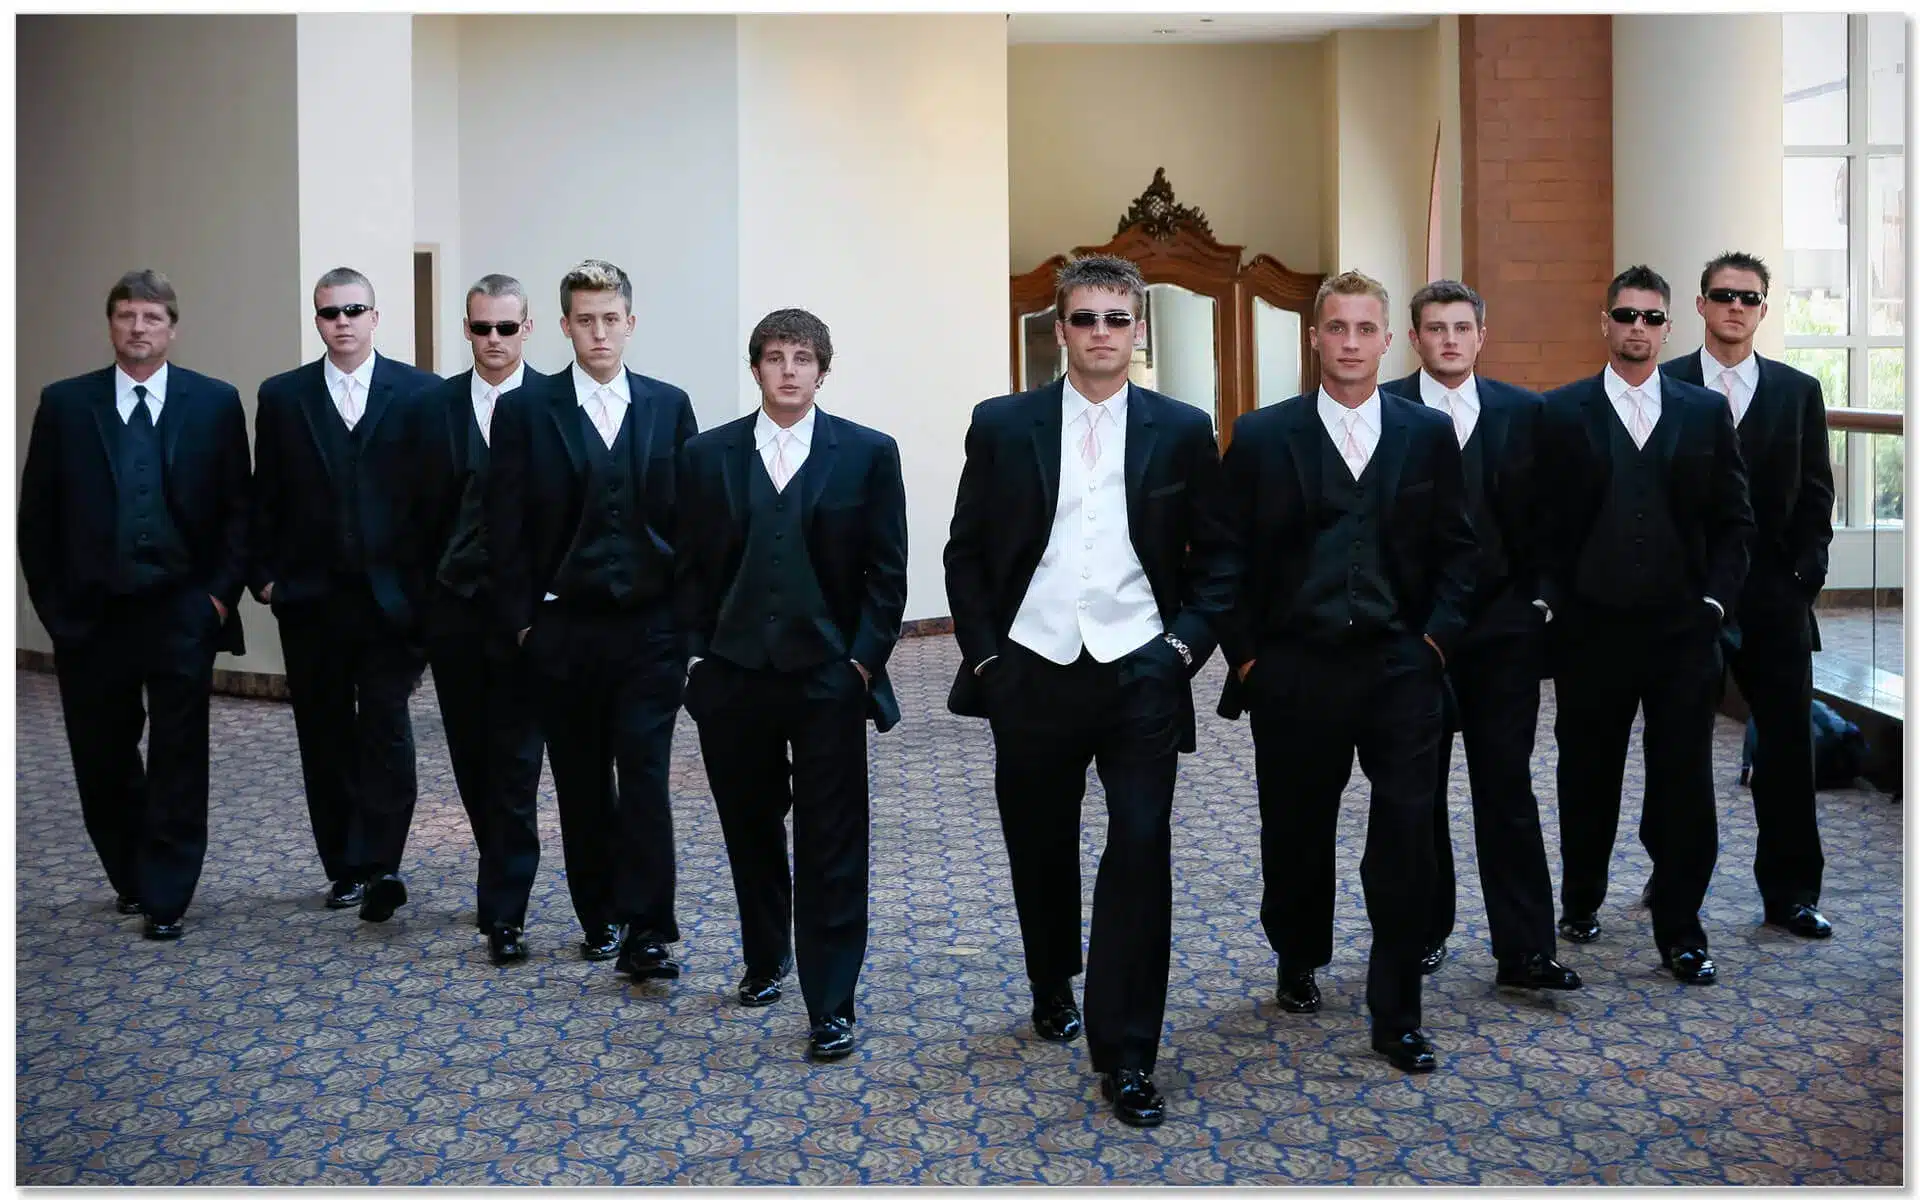 Hyatt Cincinnati Wedding, Groomsmen in a V Formation, Oceans 11 movie wedding